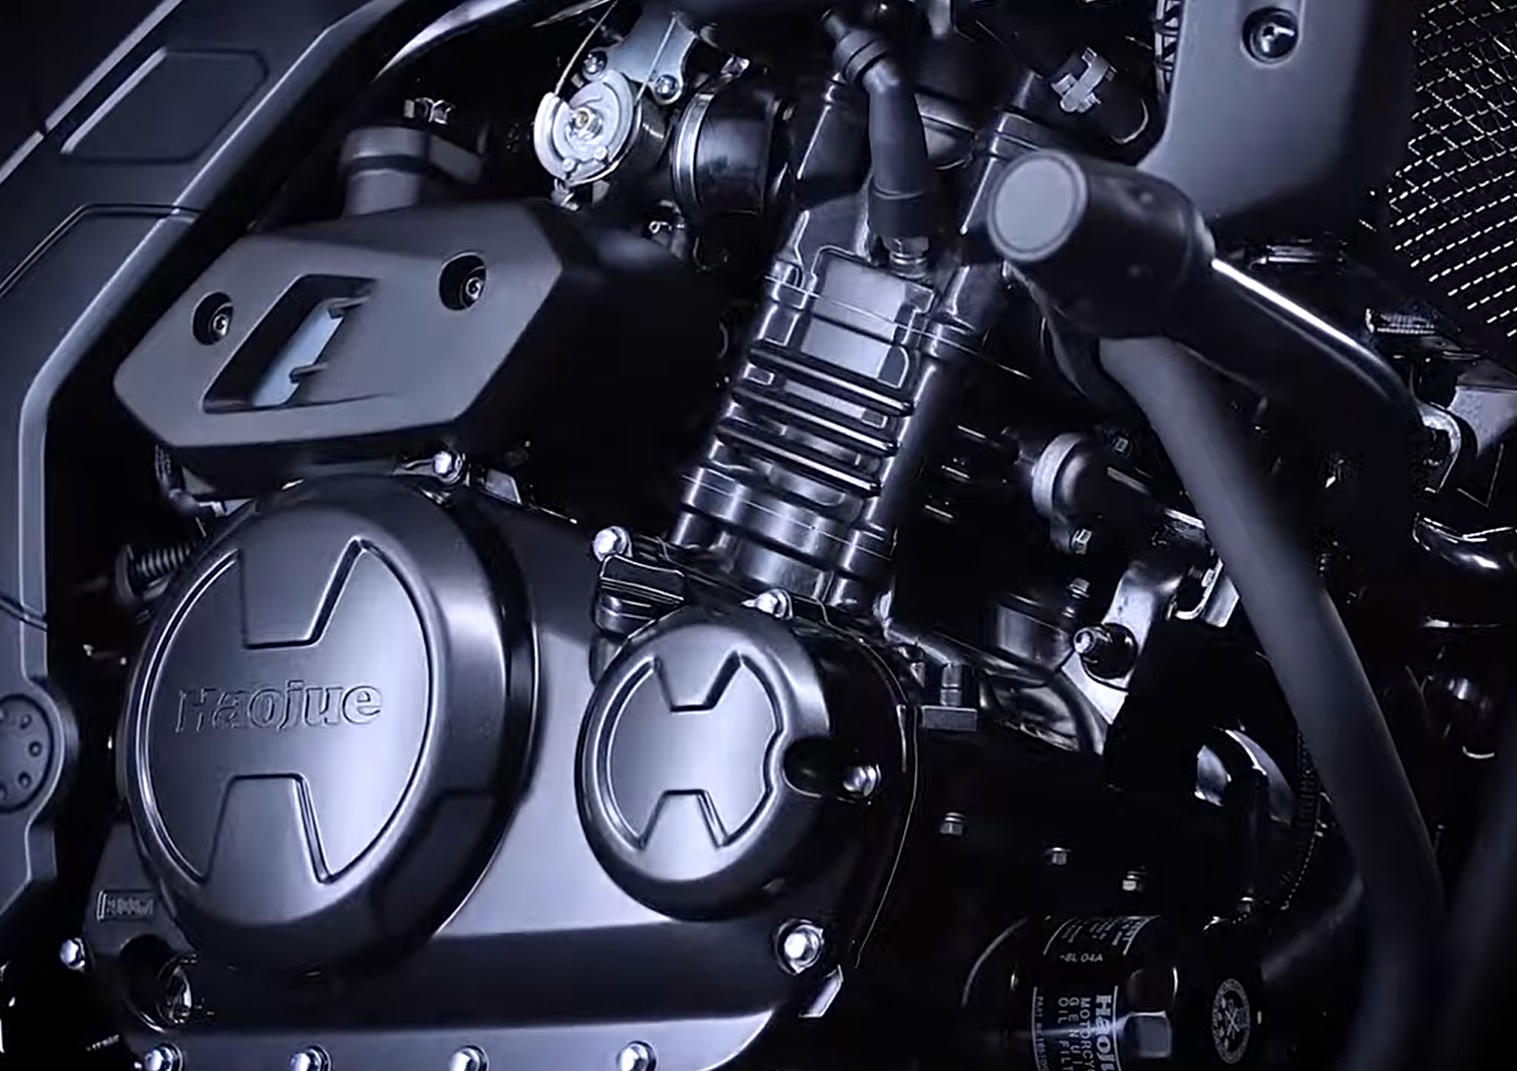 Haojue XCR 300: confira o vídeo da moto em ação